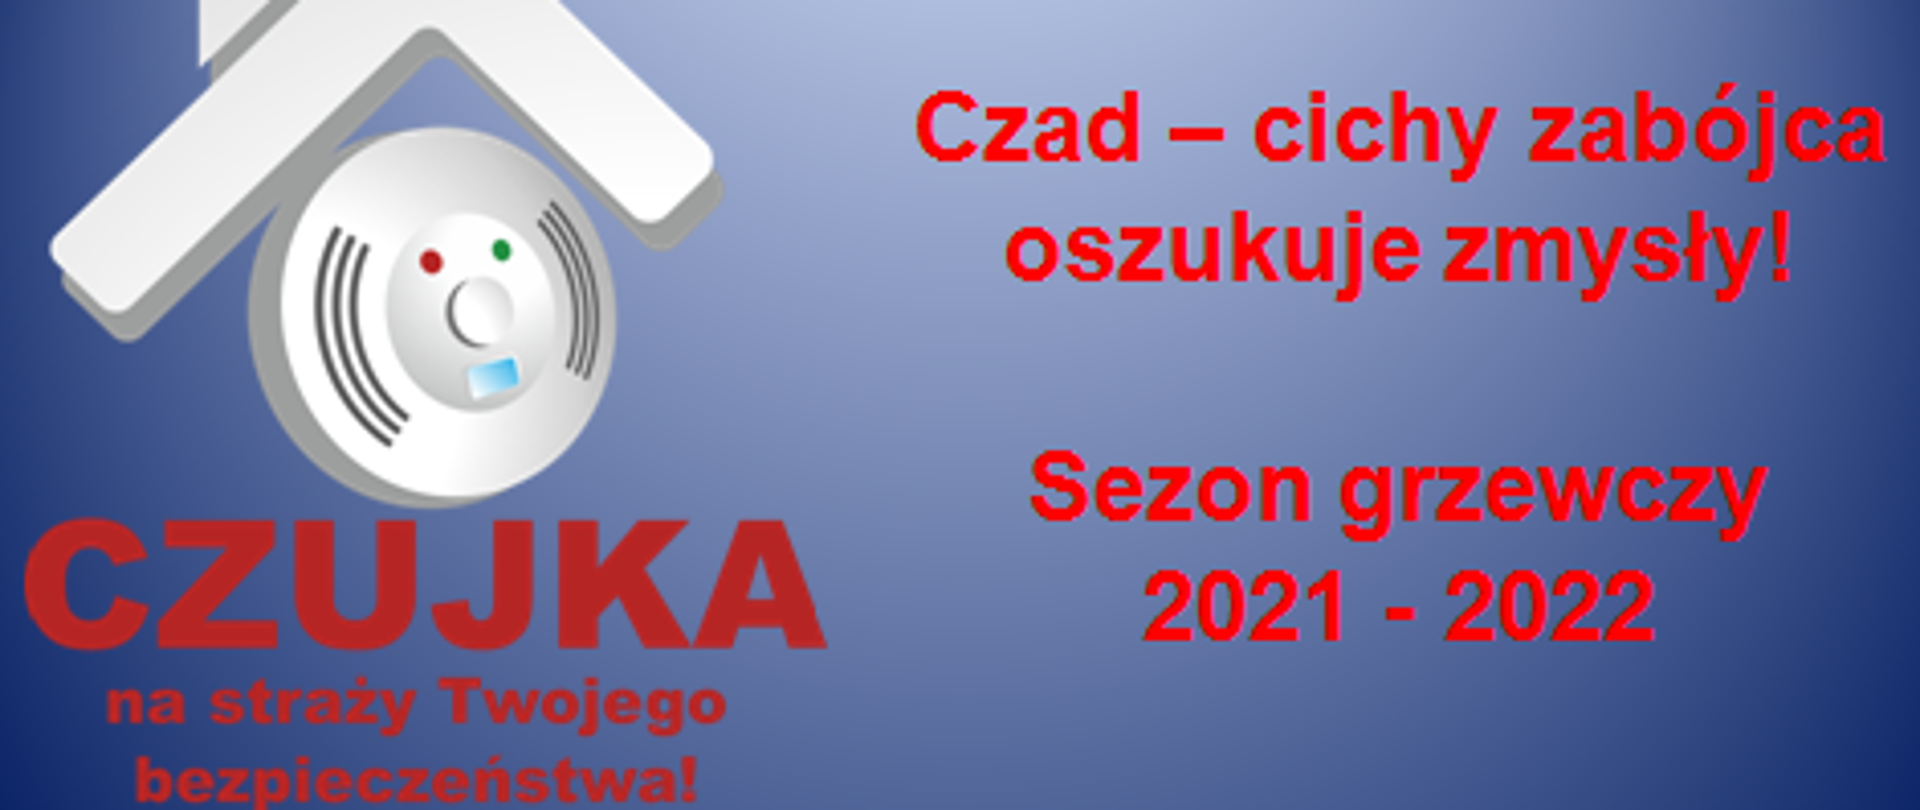 Obrazek przedstawia logo kampanii edukacyjno-informacyjnej: biały symbol daszku i czujki. Obok czerwone napisy: „Czujka na straży Twojego bezpieczeństwa!”, "Czad - cichy zabójca oszukuje zmysły! i "Sezon grzewczy 2021- 2022". 